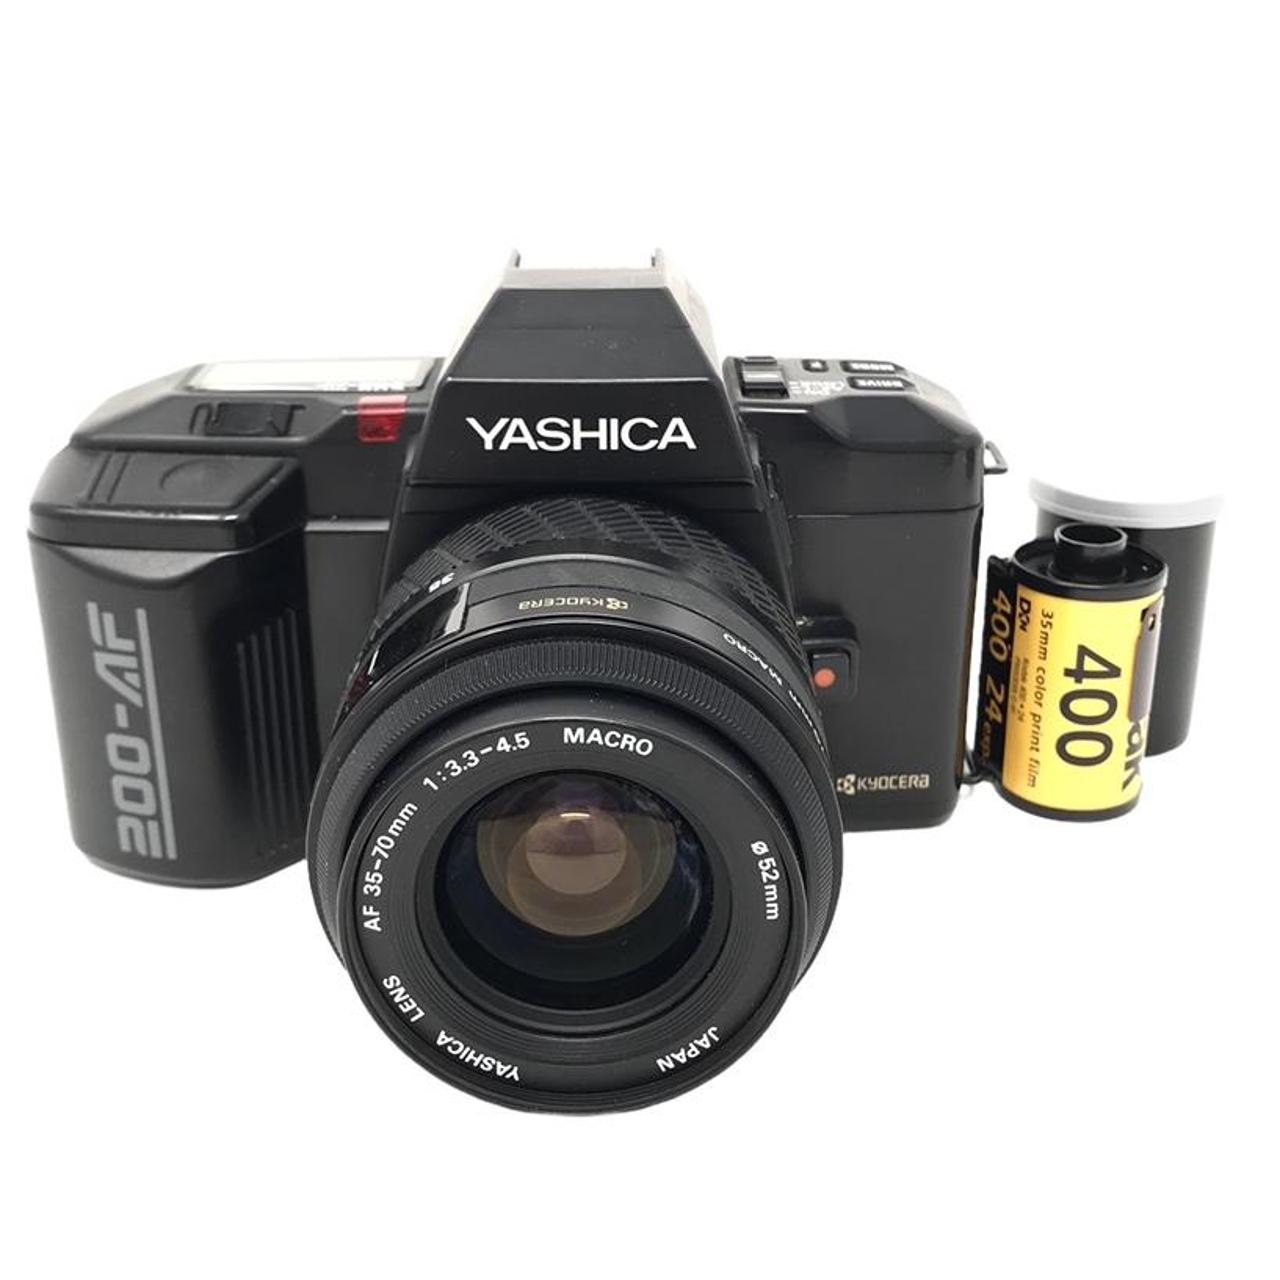 Product Image 1 - Yashica 200-AF 35mm Film Camera

Comes